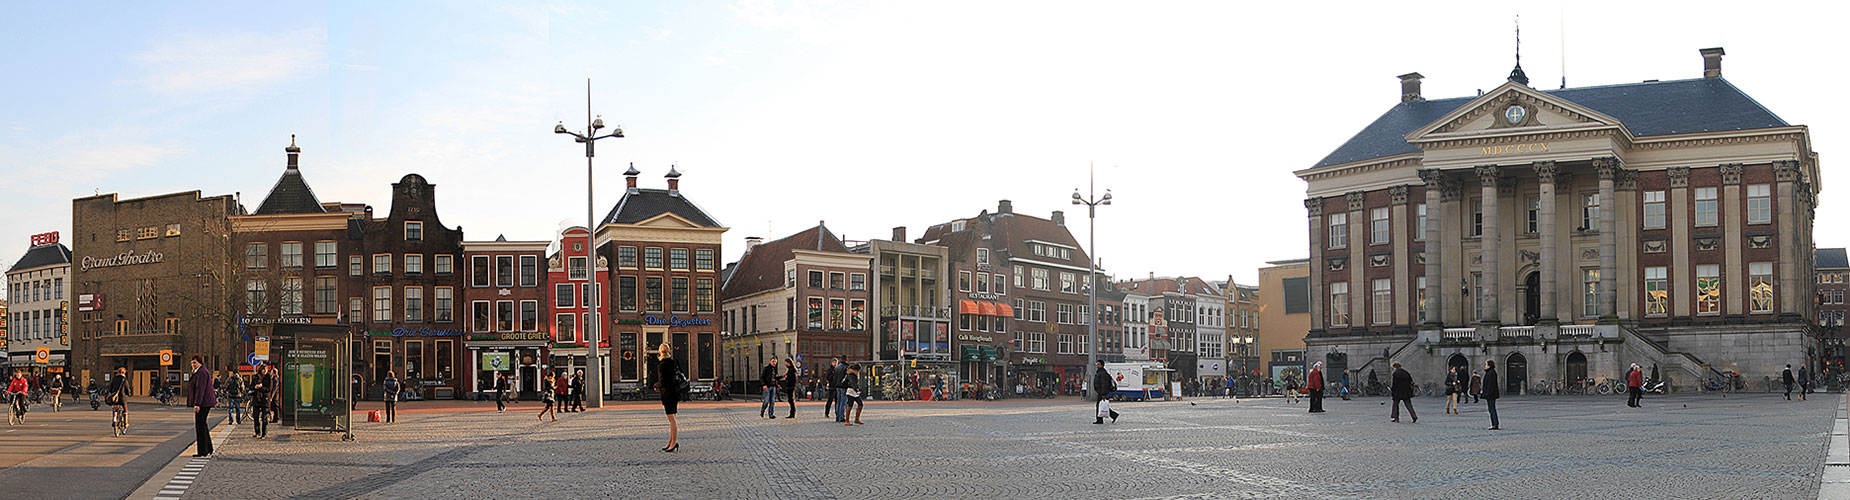 Great market Groningen